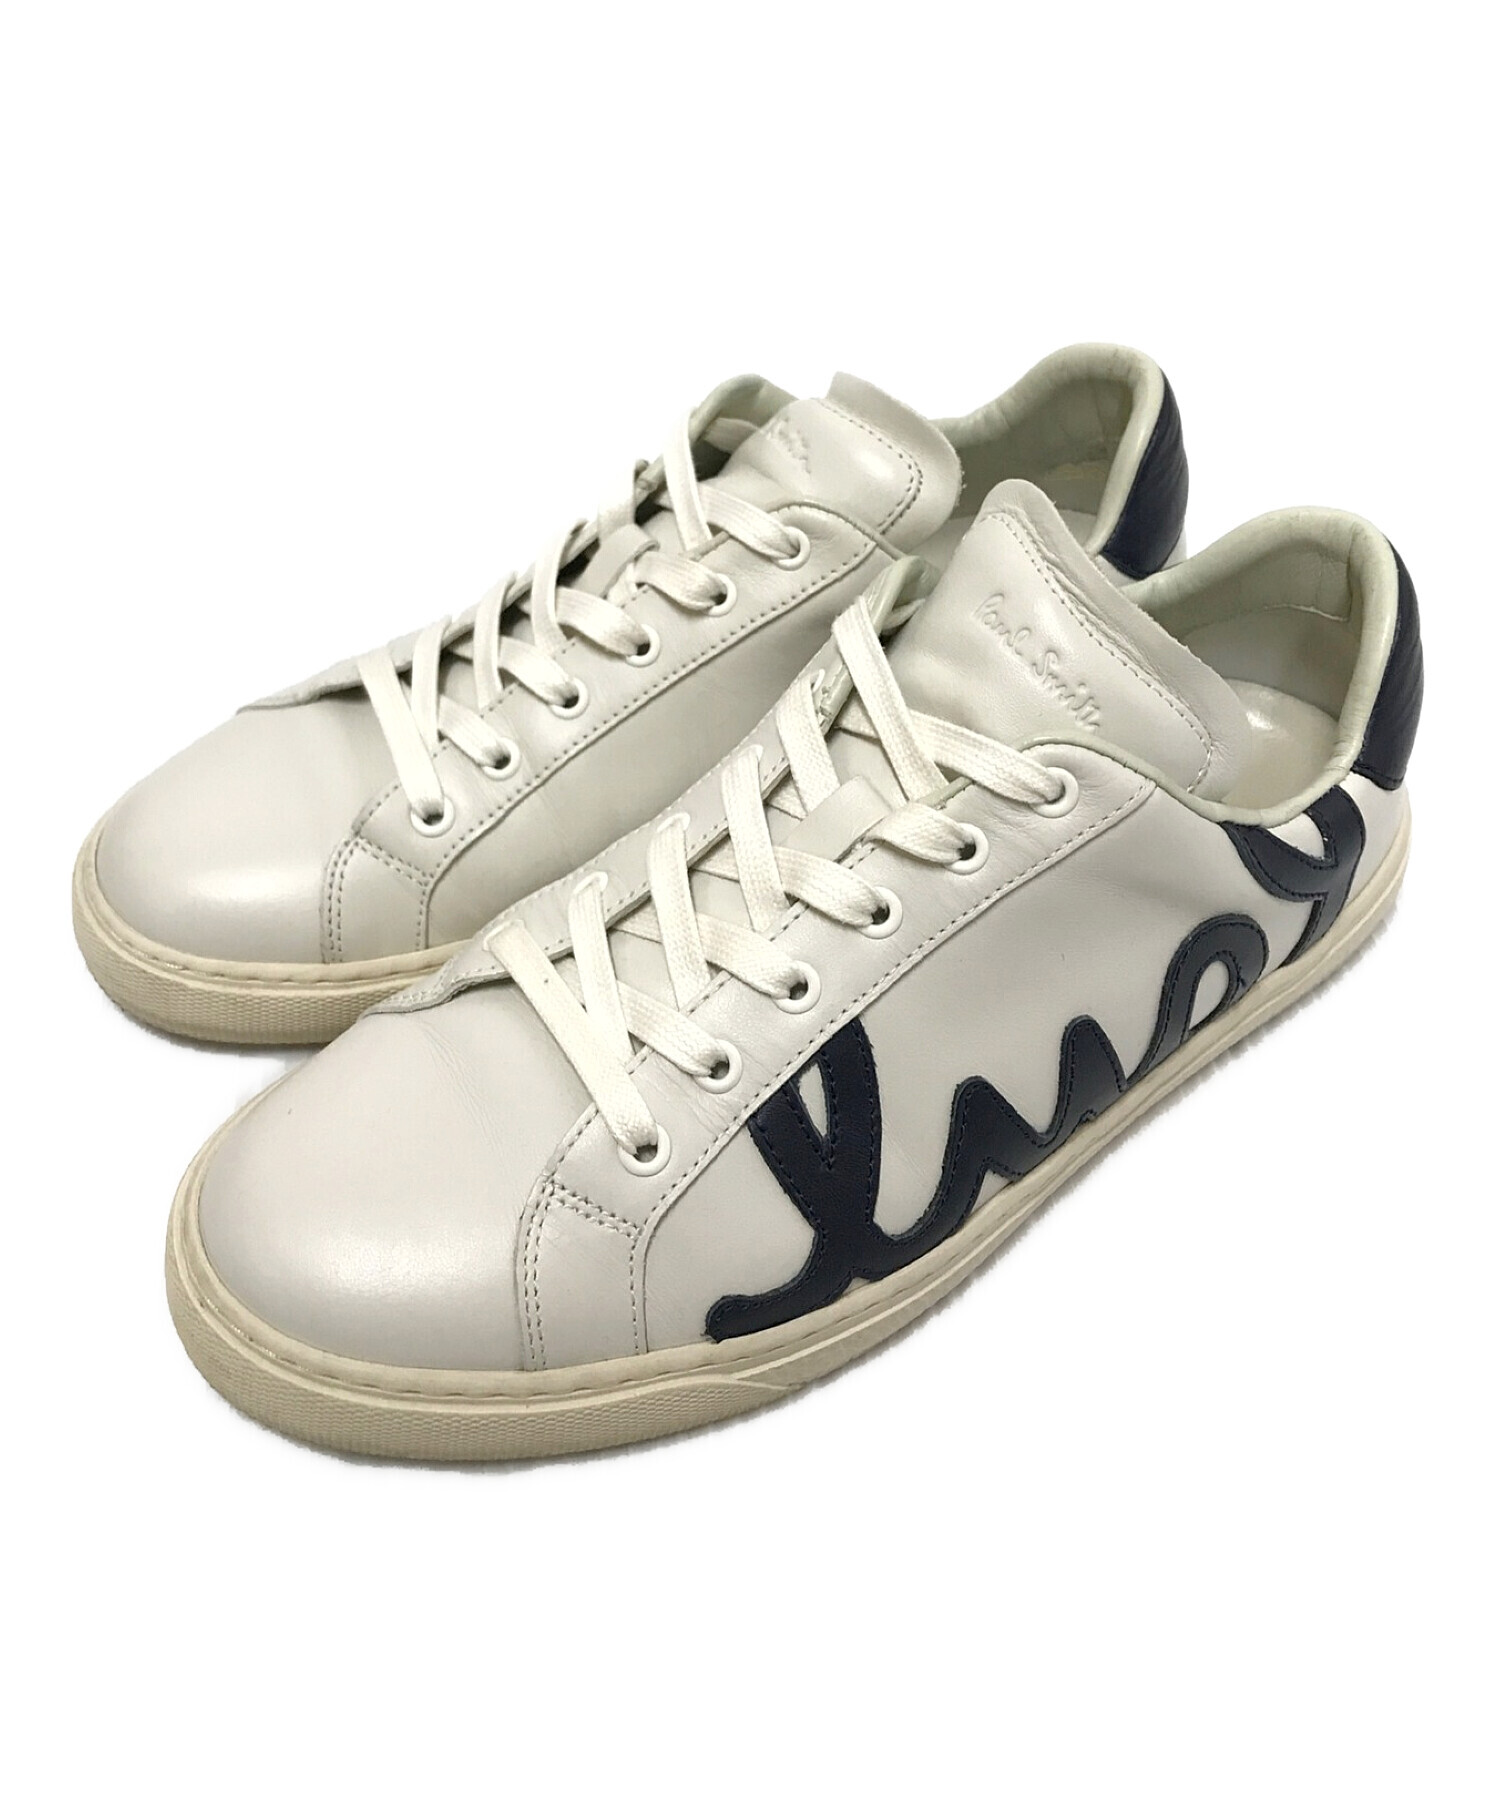 オシャレポールスミス 革靴 サイズ 6 (24.5cm～25.0cm)